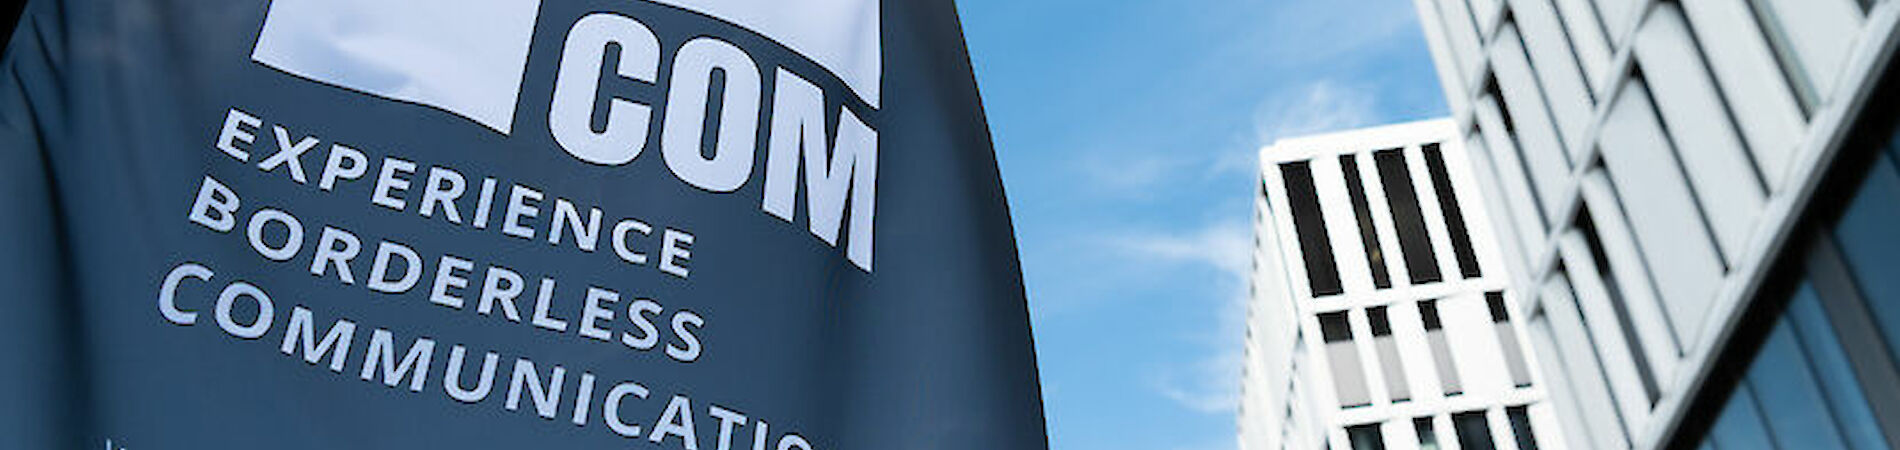 Beachflag mit Logo und Schriftzug BOCOM vor blauem Himmel und Gebäuden im Hintergrund